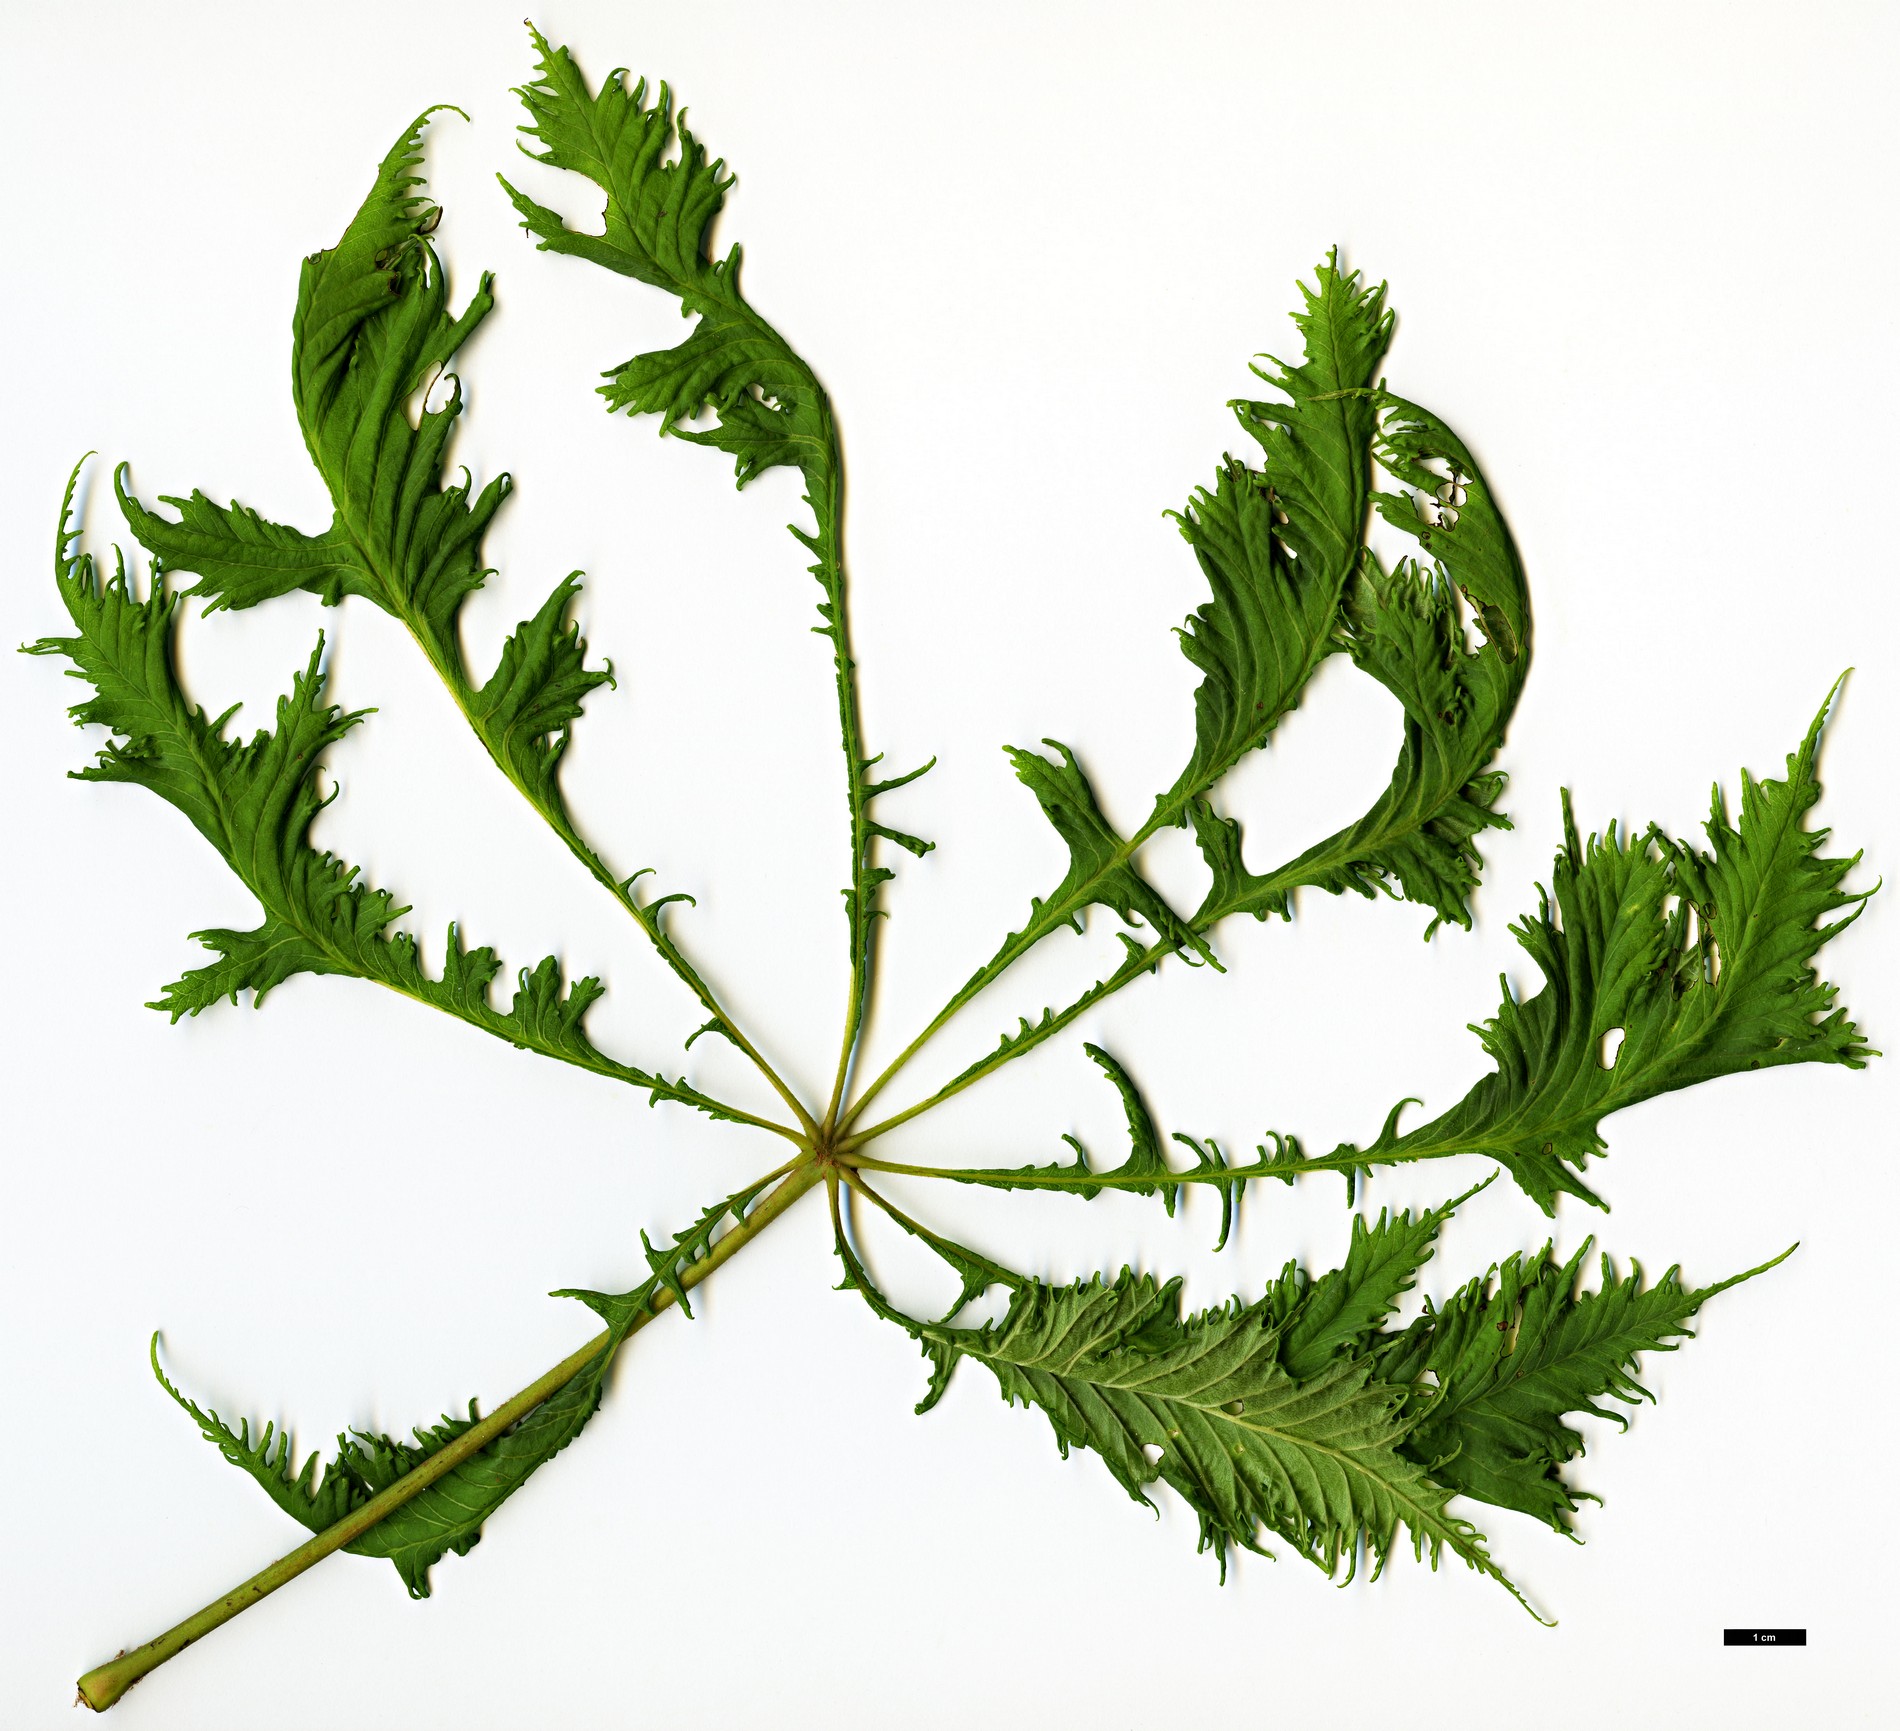 High resolution image: Family: Sapindaceae - Genus: Aesculus - Taxon: hippocastanum - SpeciesSub: 'Laciniata'